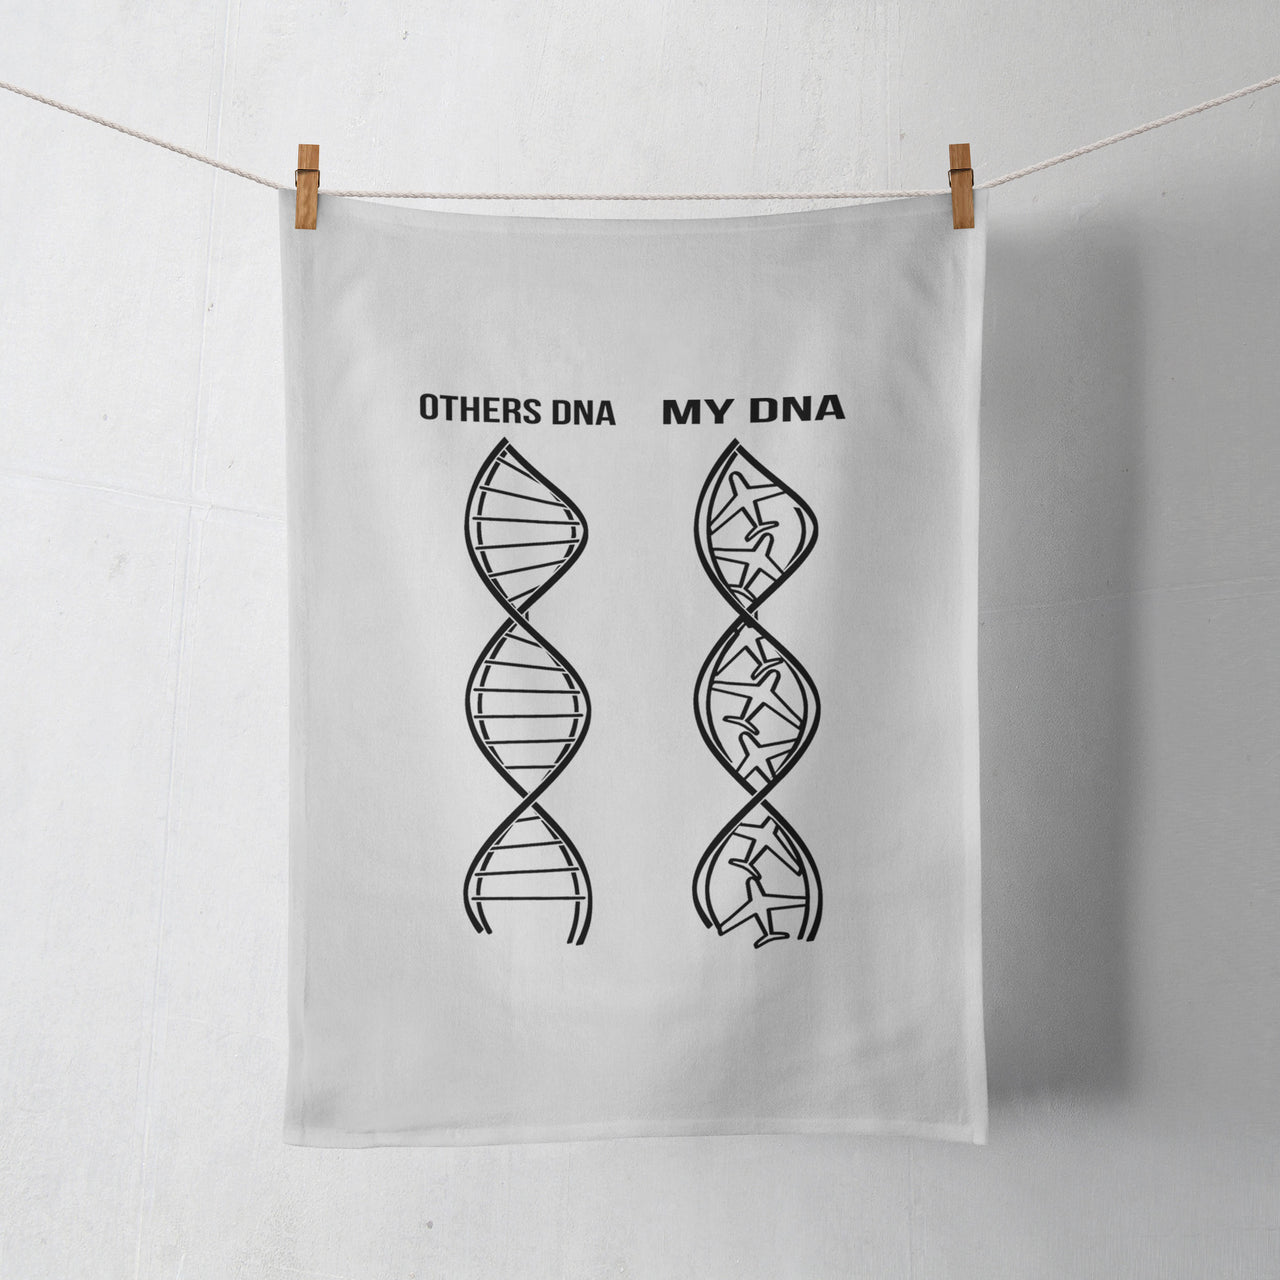 Aviation DNA Designed Towels